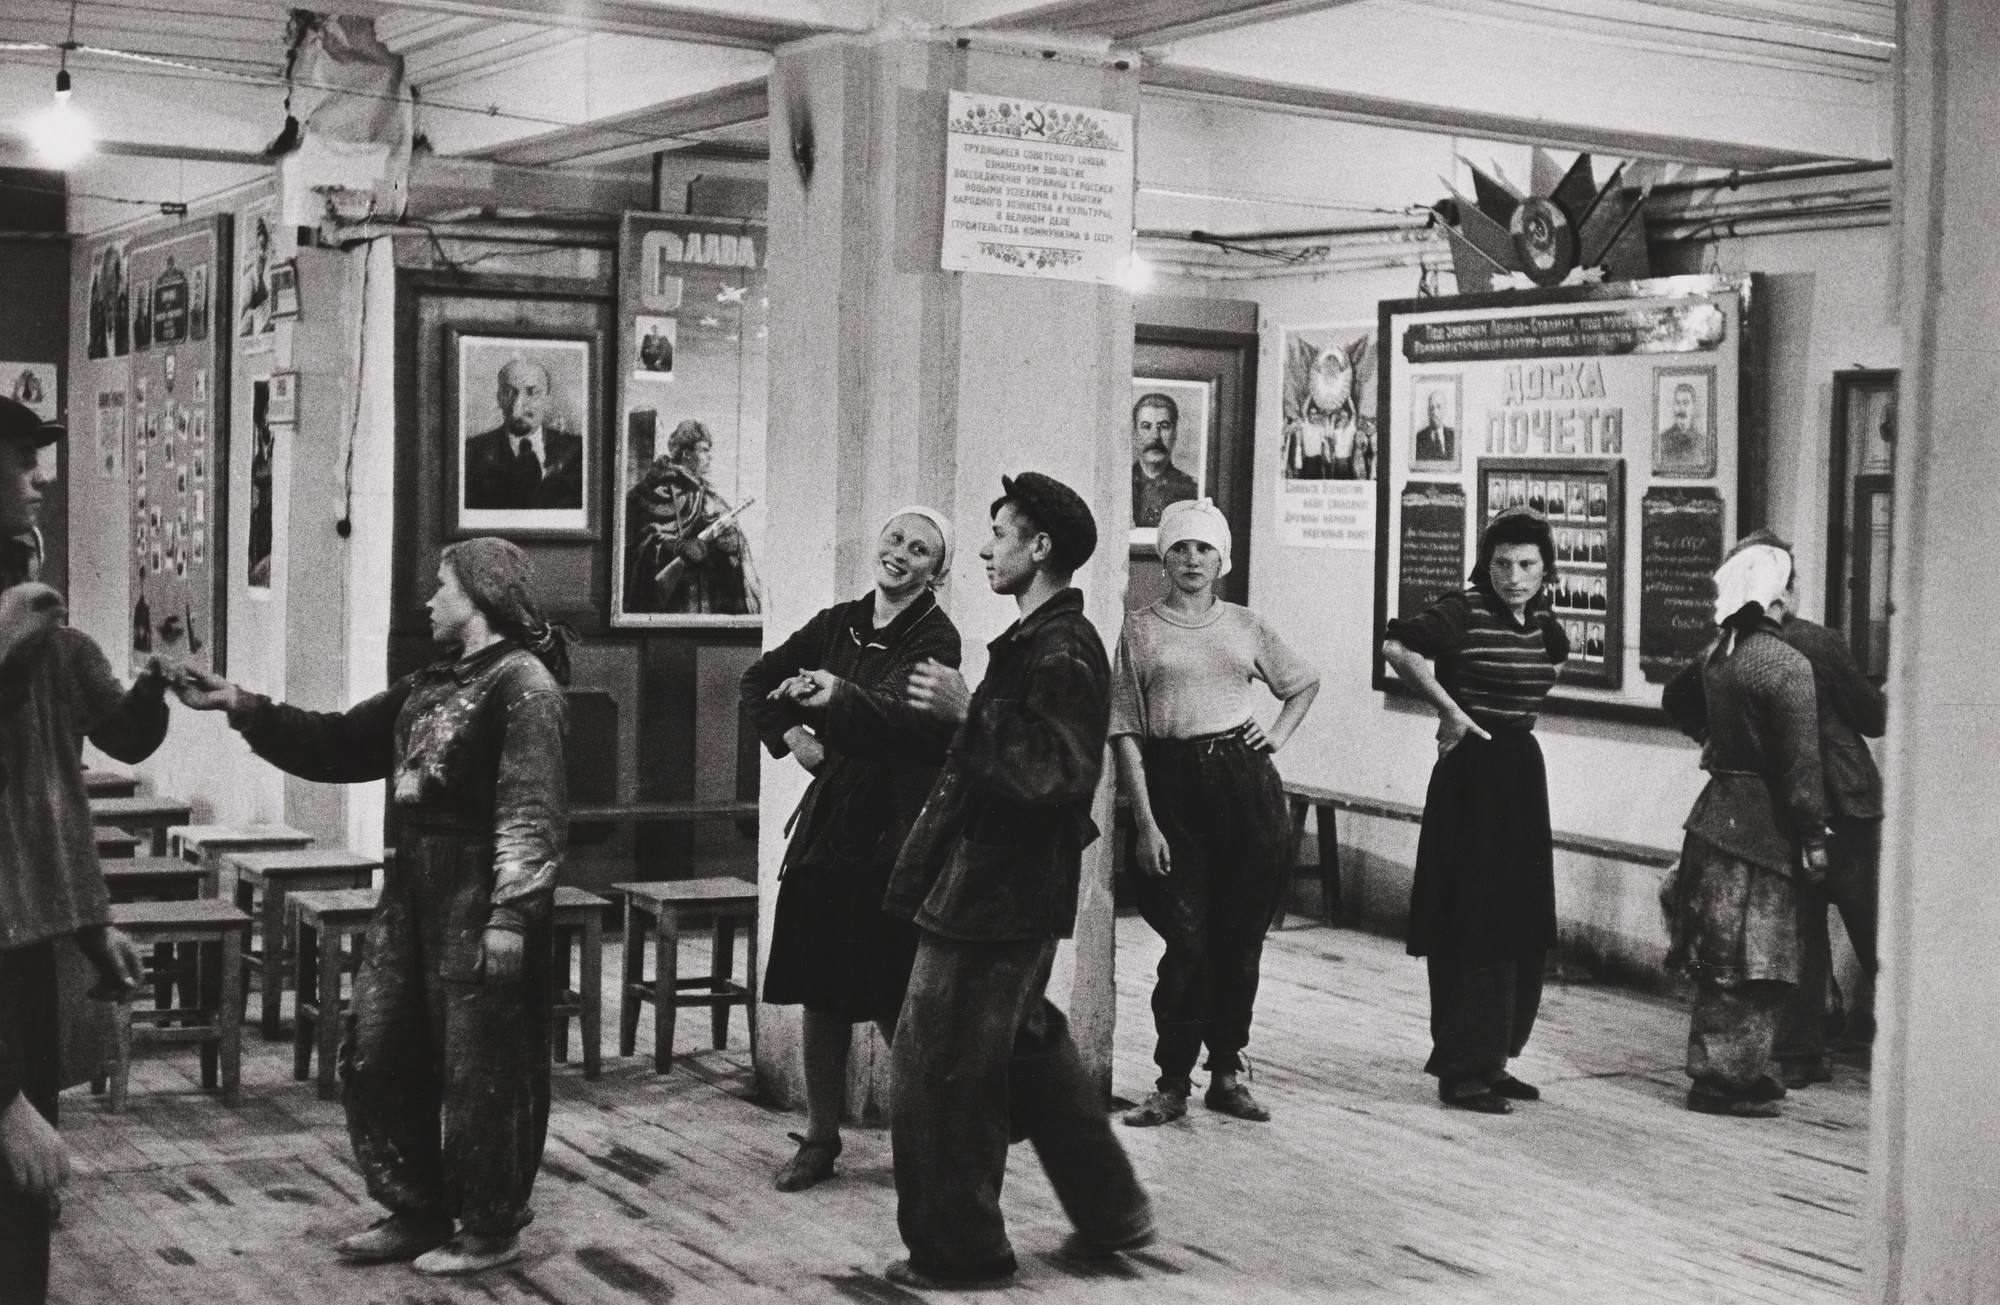 Столовая для работников строительства отеля Метрополь, Москва, 1954. Фотограф Анри Картье-Брессон